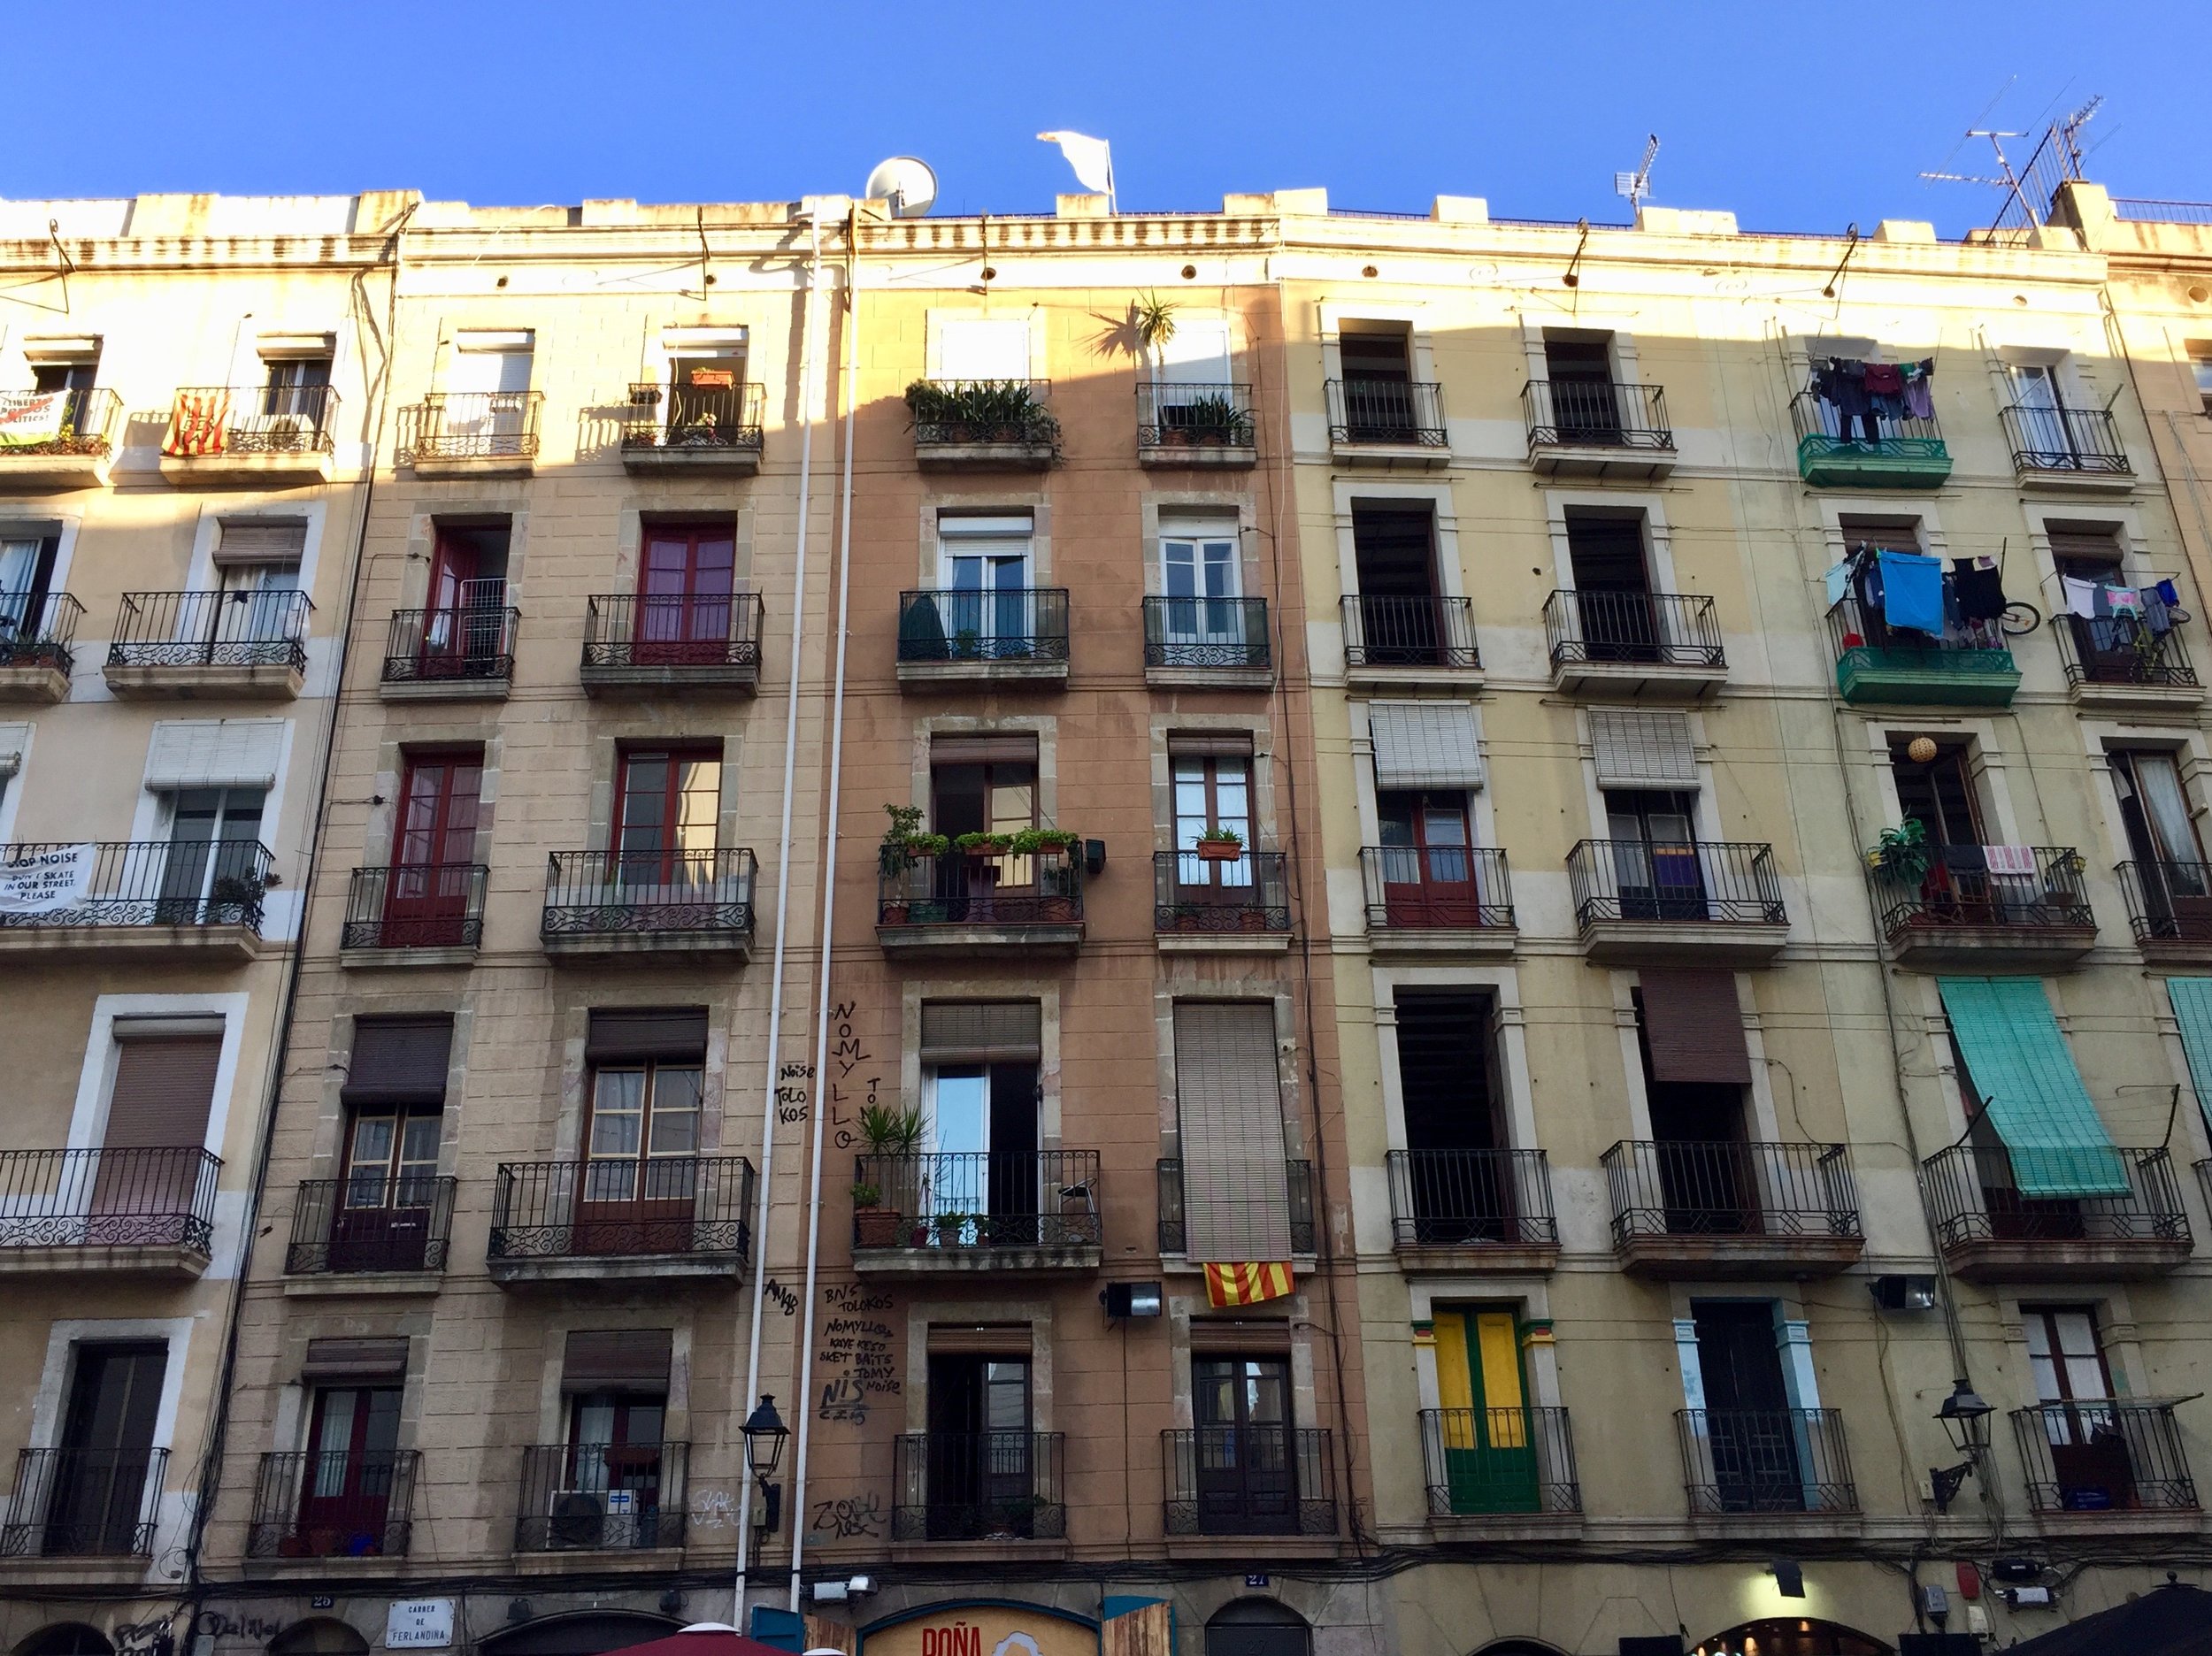 Barcelona Spain Buildings.jpg